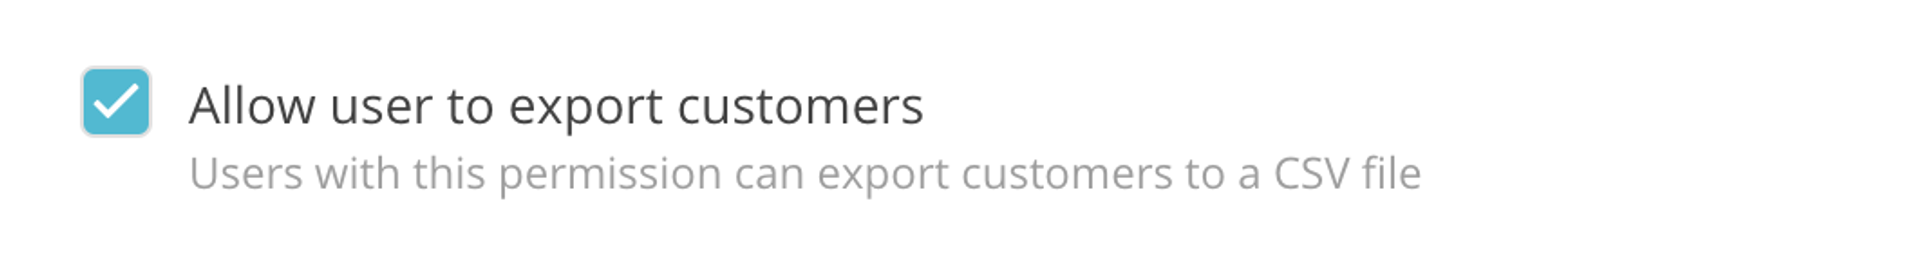 Export customers